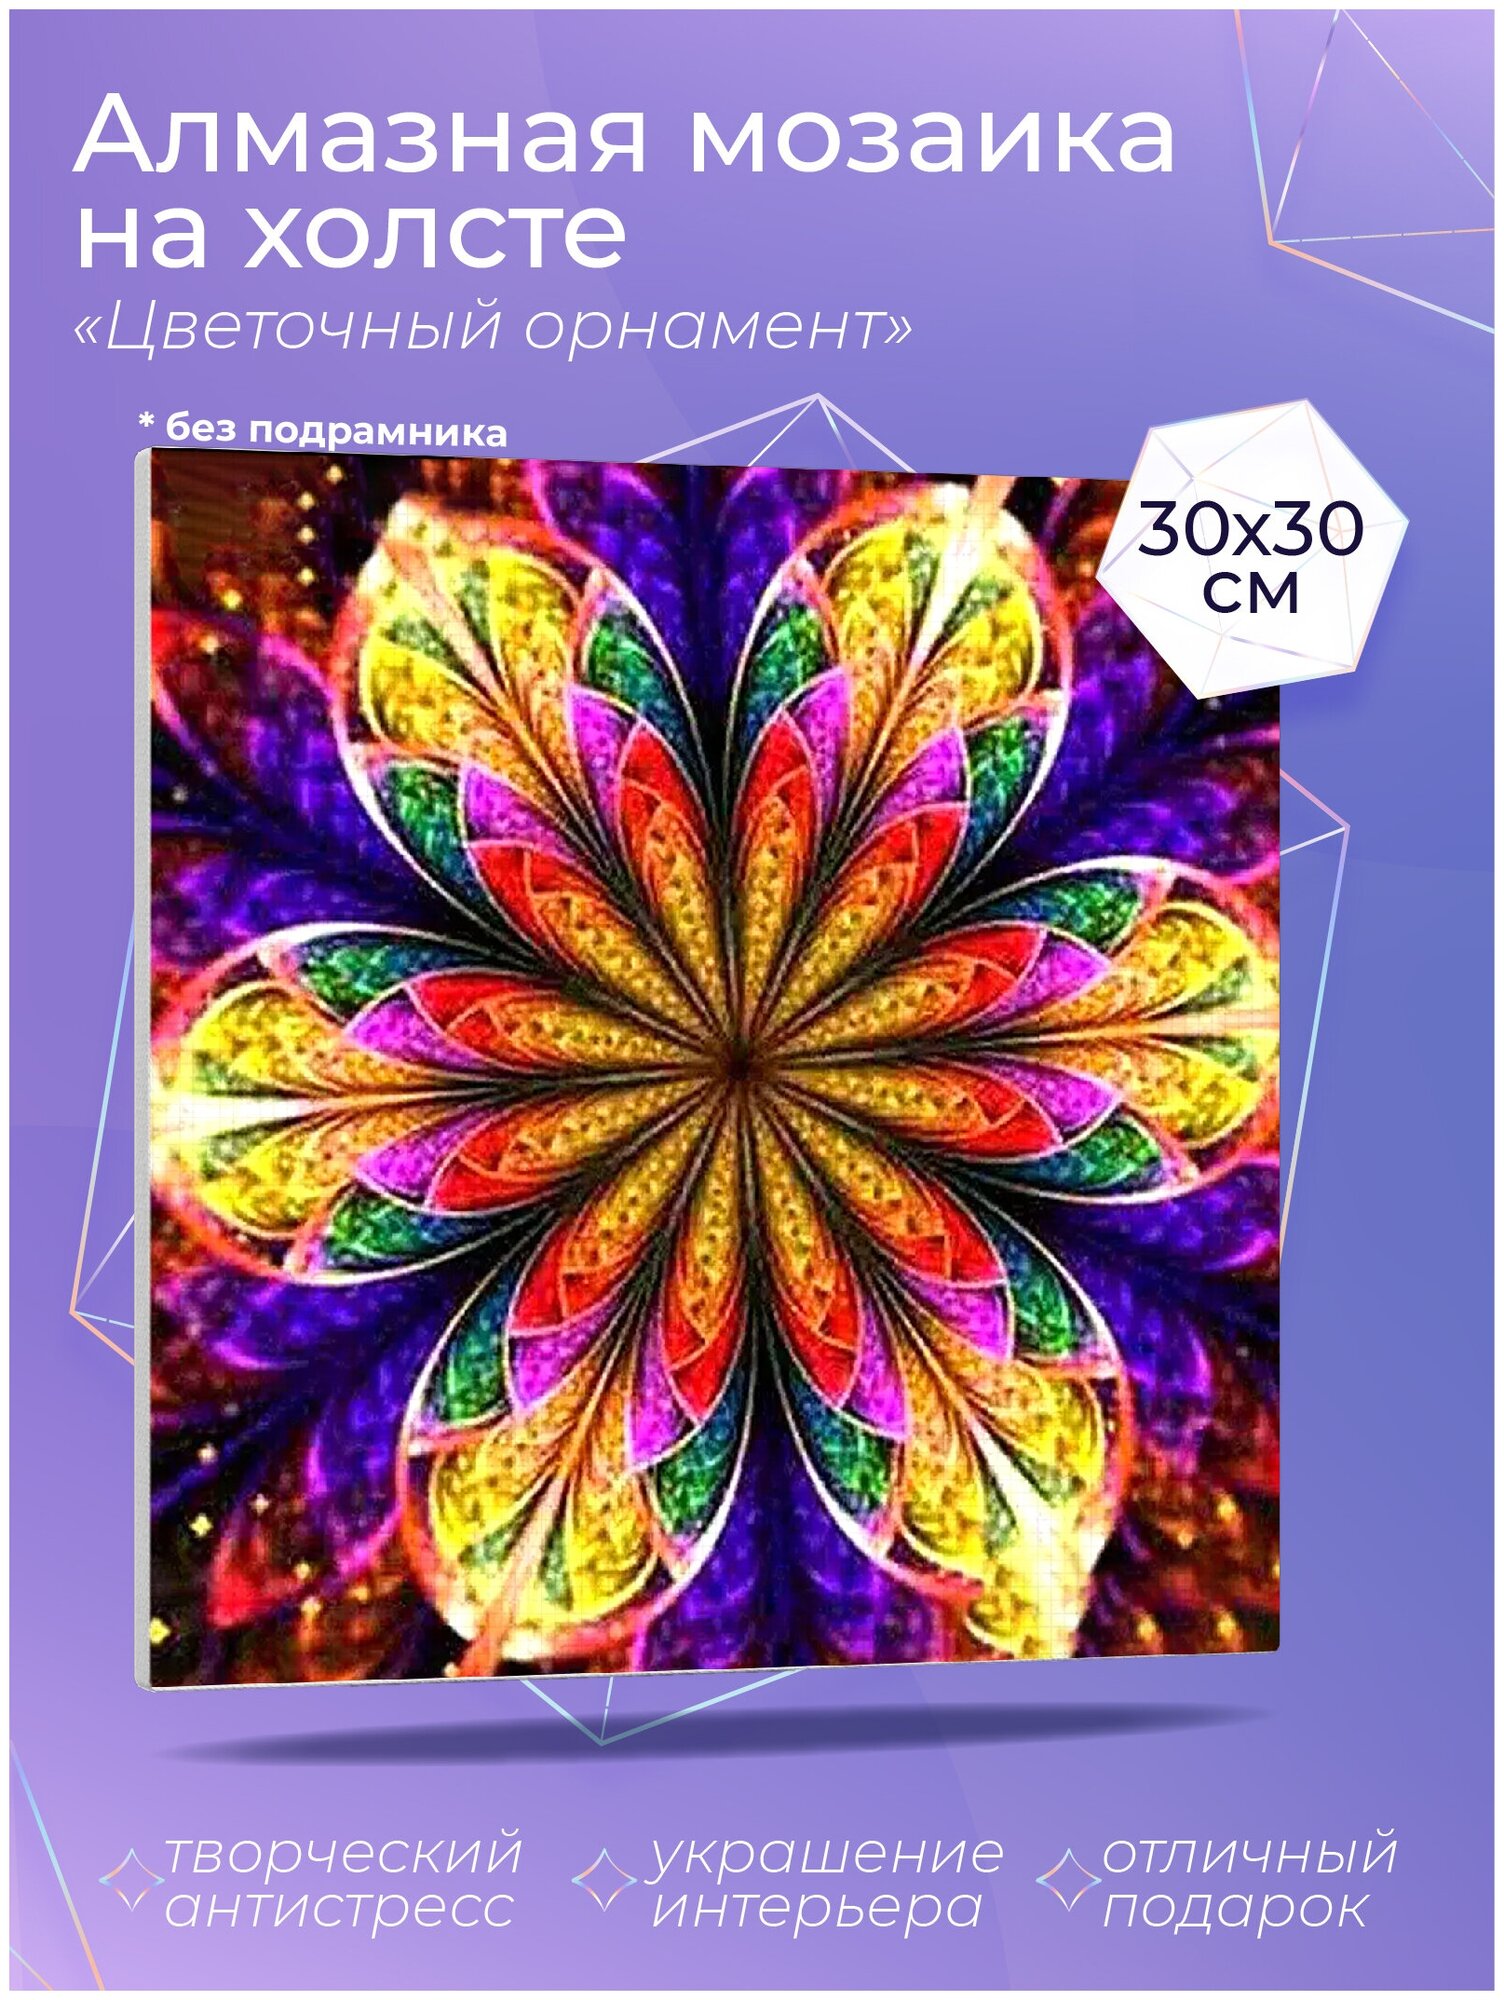 Картина алмазная мозаика "Цветочный орнамент" со стразами без подрамника на холсте 30х30 см